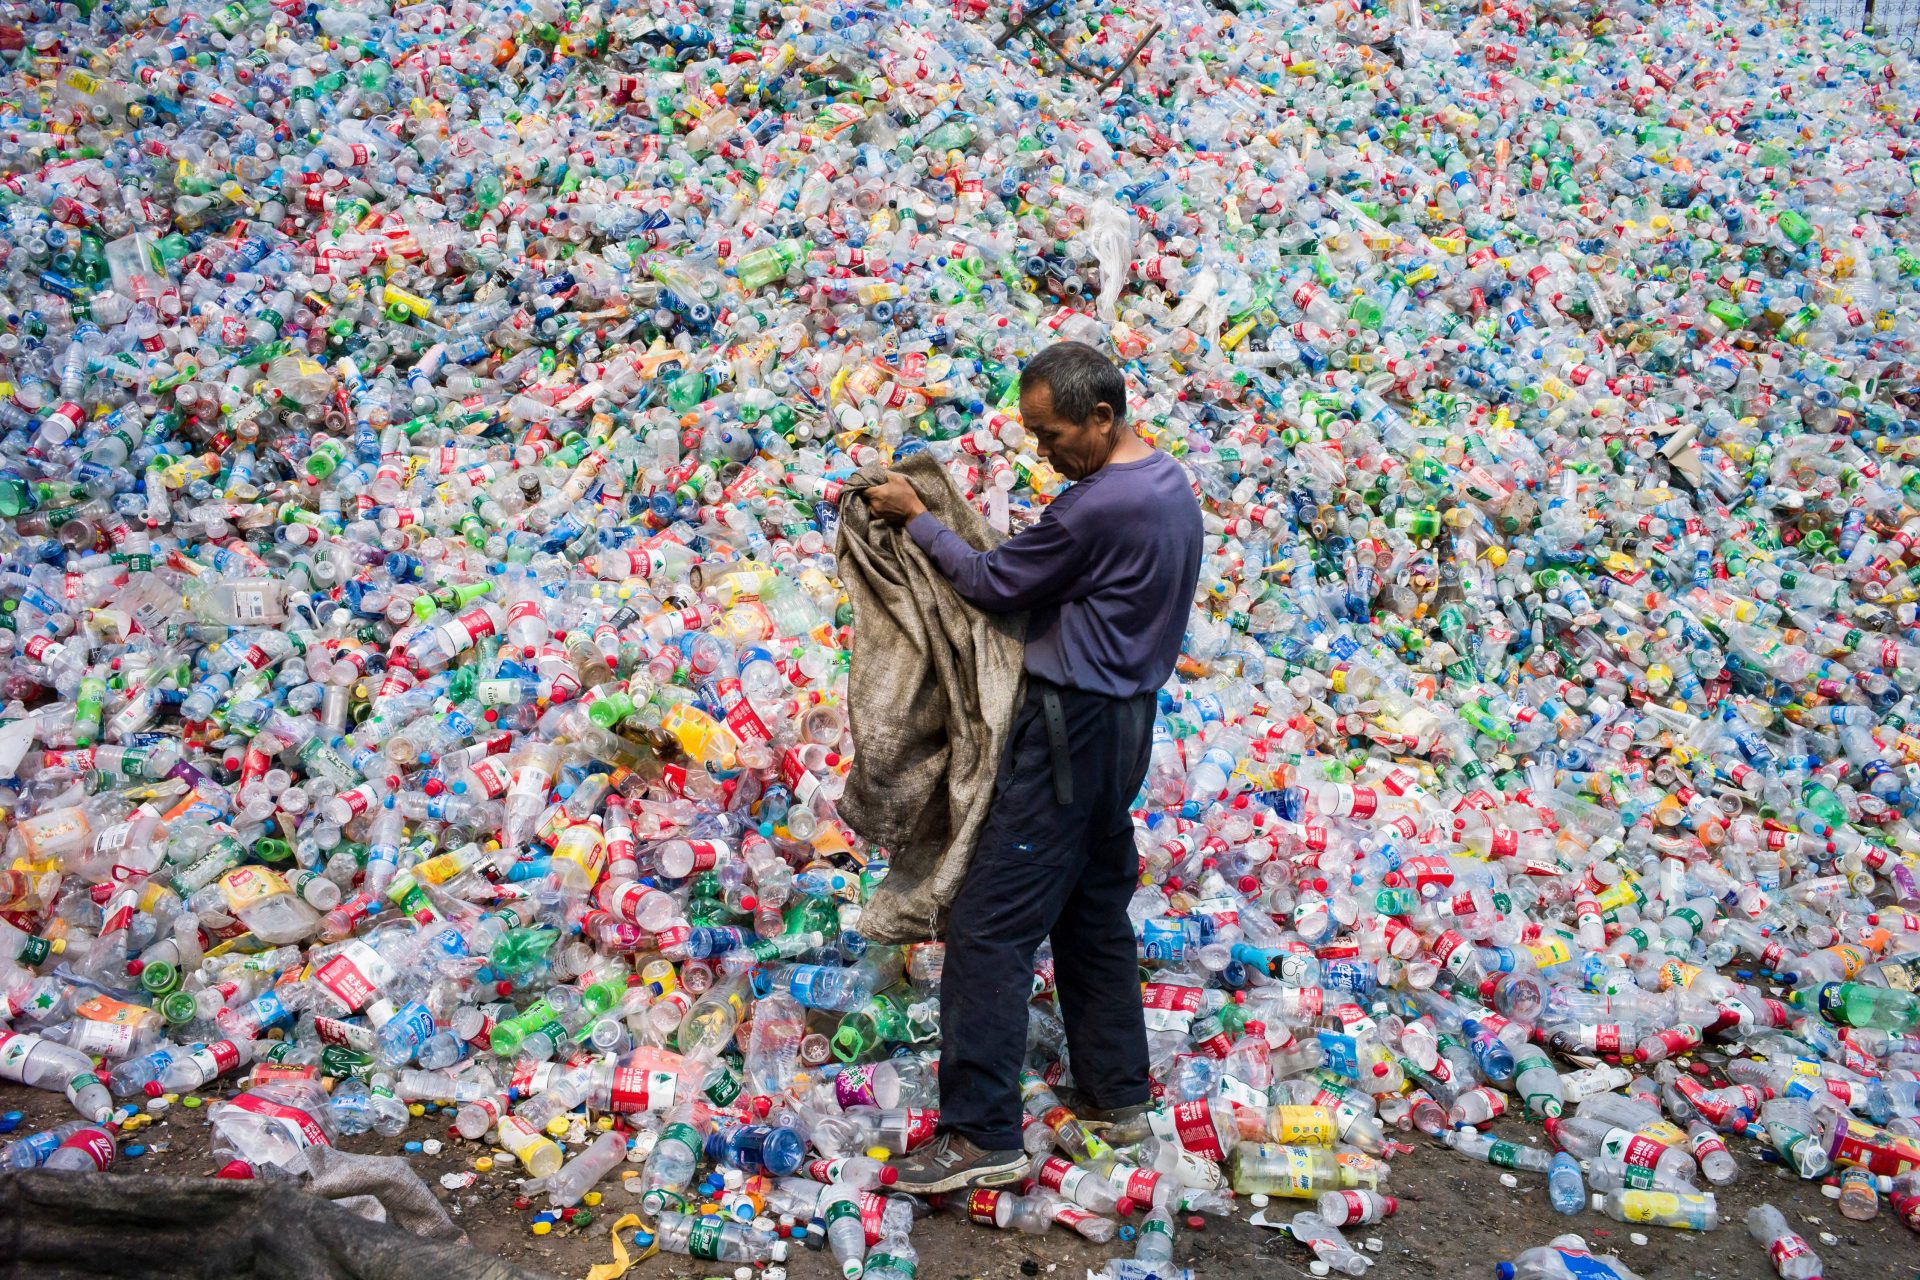 Die Bürger sind es leid, auf Maßnahmen gegen Plastik zu warten, und nehmen die Sache selbst in die Hand